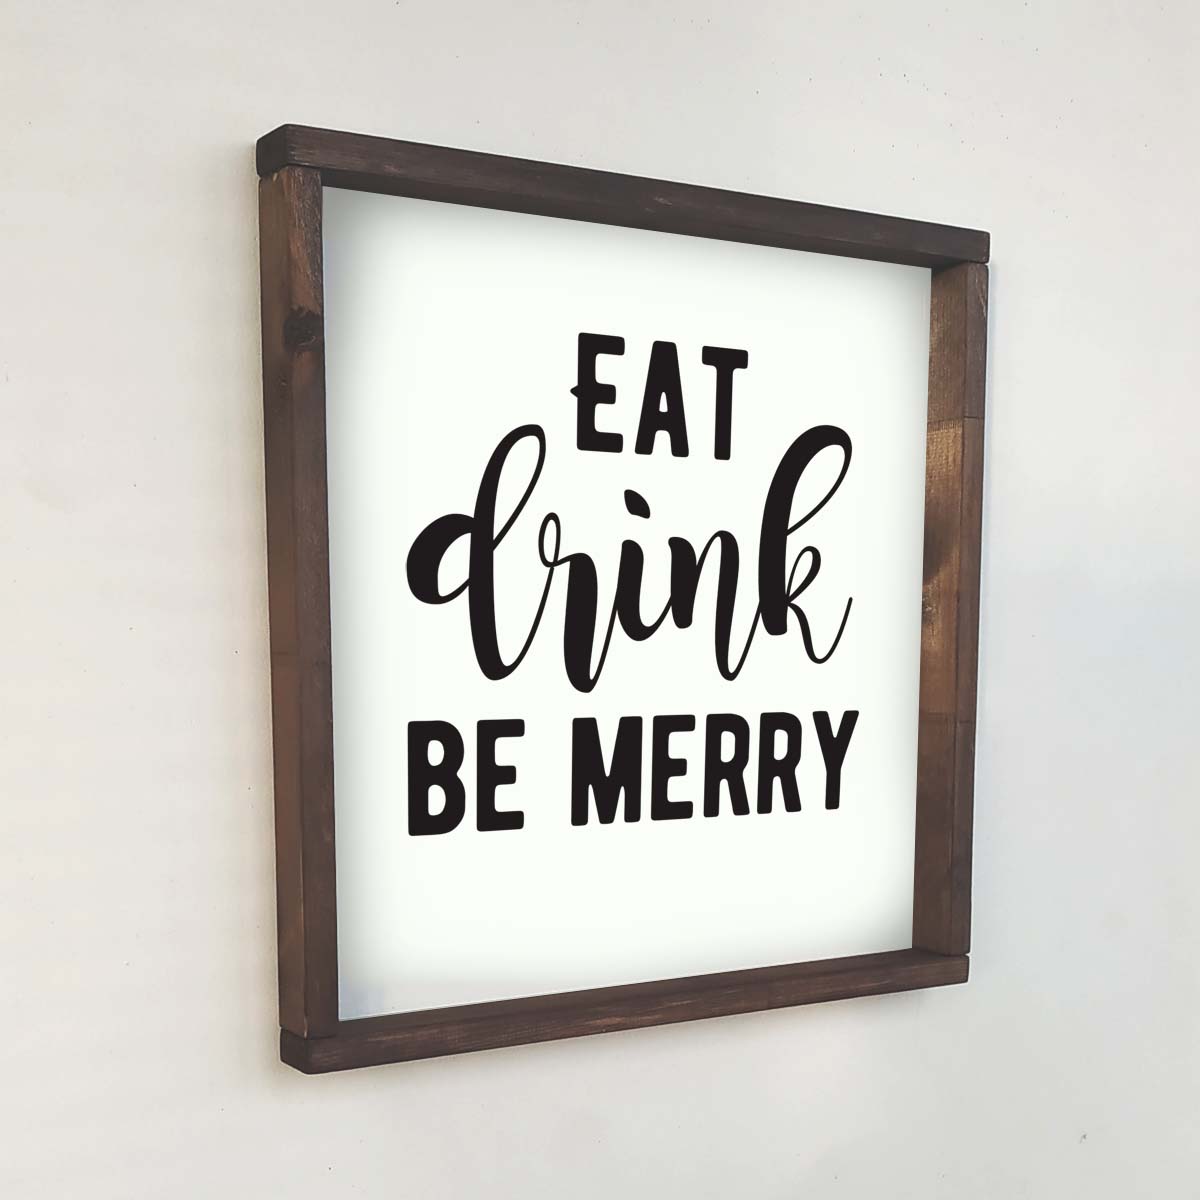 Декоративное панно с надписью EAT DRINK BE MERRY - иллюстрация товара №1